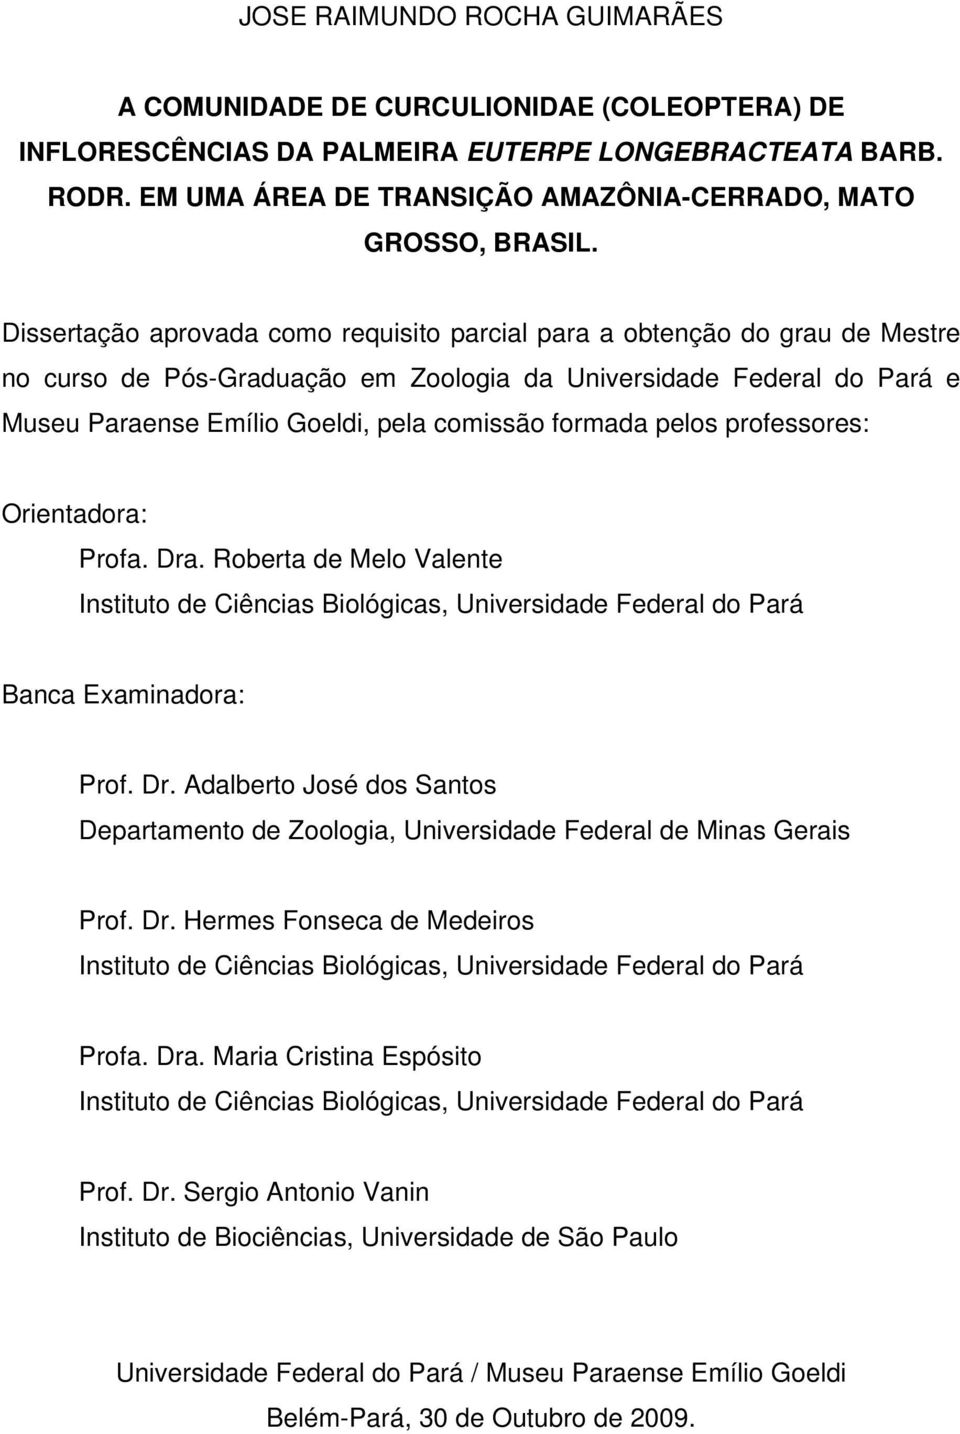 Dissertação aprovada como requisito parcial para a obtenção do grau de Mestre no curso de Pós-Graduação em Zoologia da Universidade Federal do Pará e Museu Paraense Emílio Goeldi, pela comissão